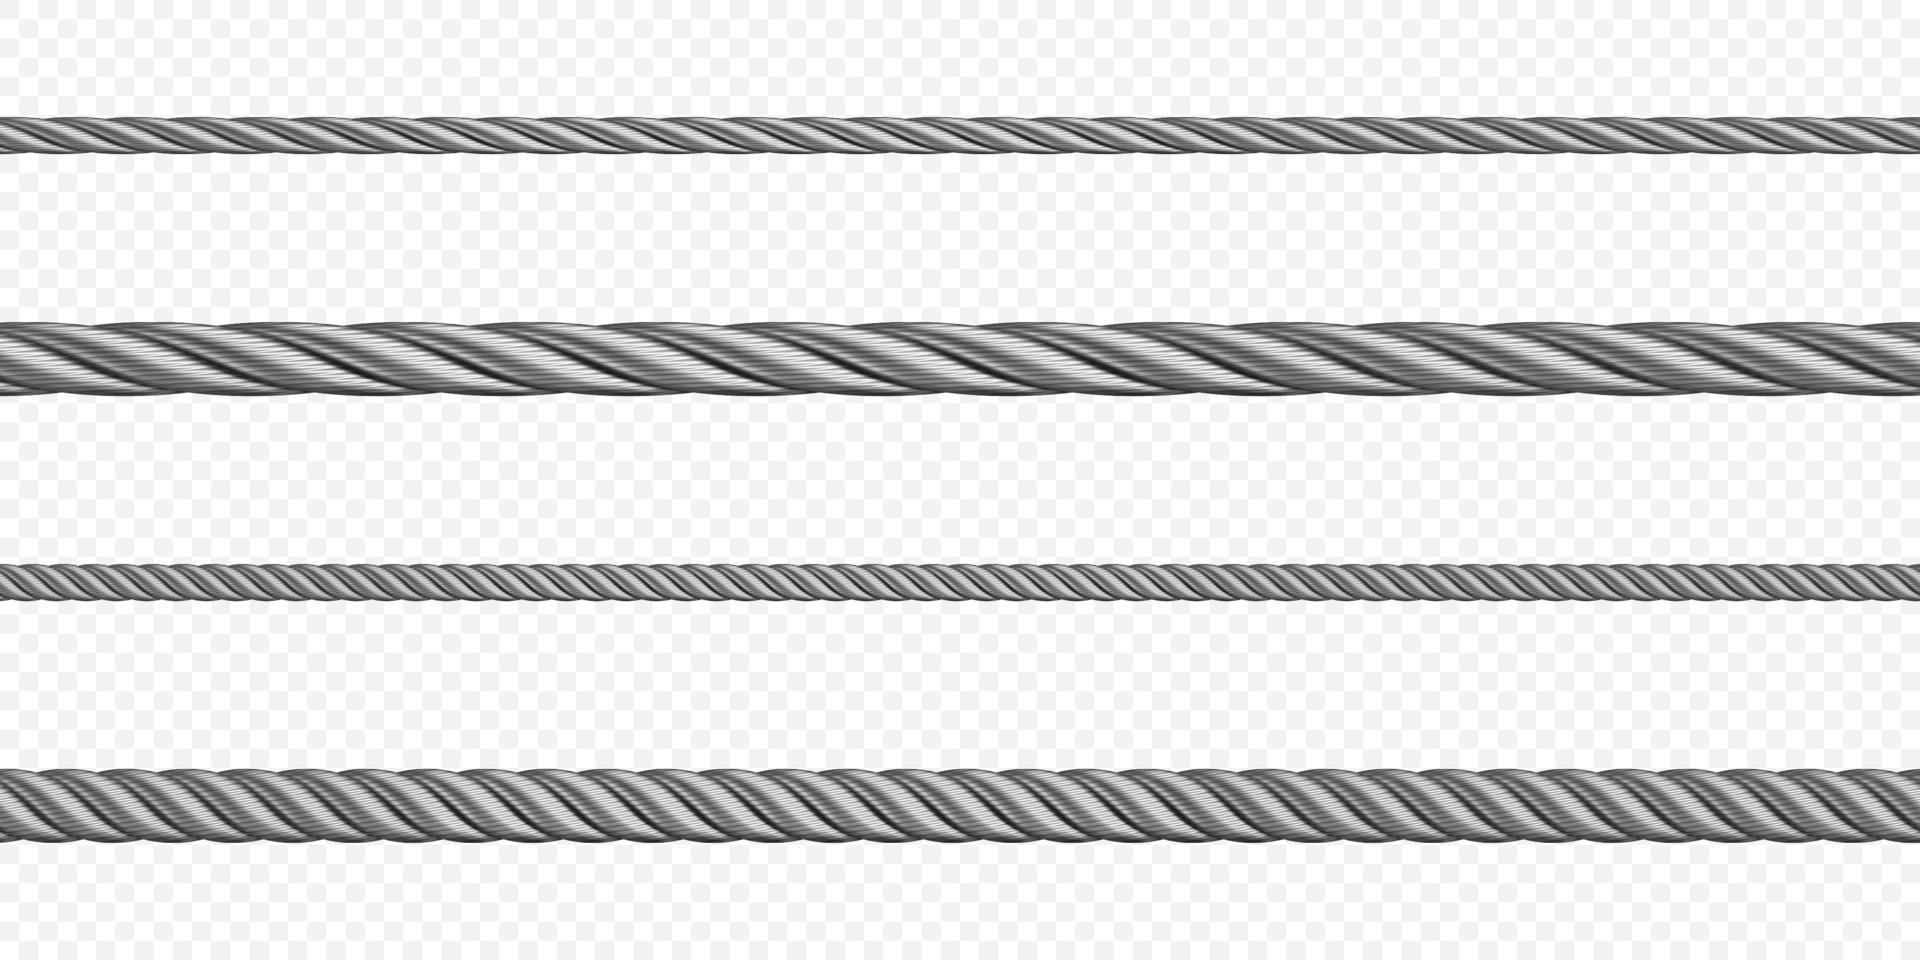 guindaleza de metal, cuerda, cable de acero de diferentes tamaños vector